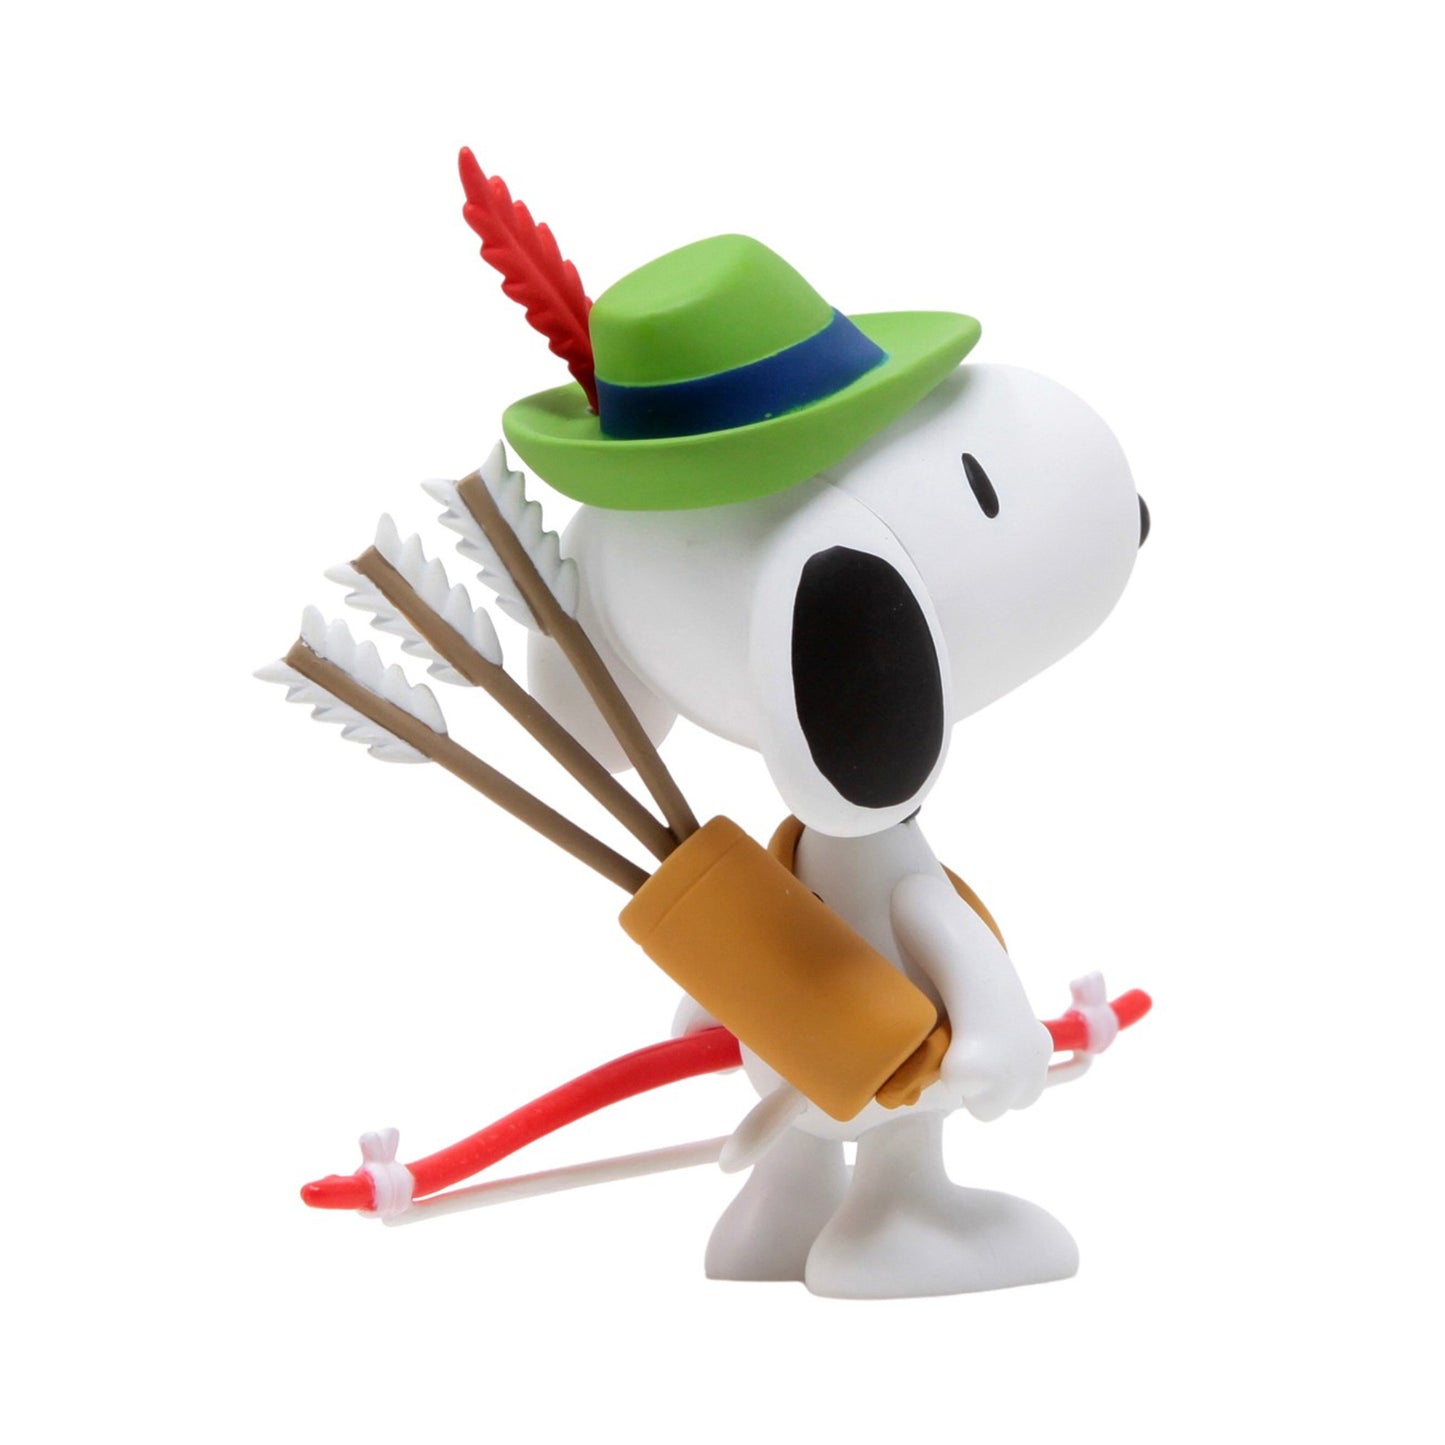 MEDICOM TOY: UDF Peanuts Series 11 - Robin Hood Snoopy Green Figure